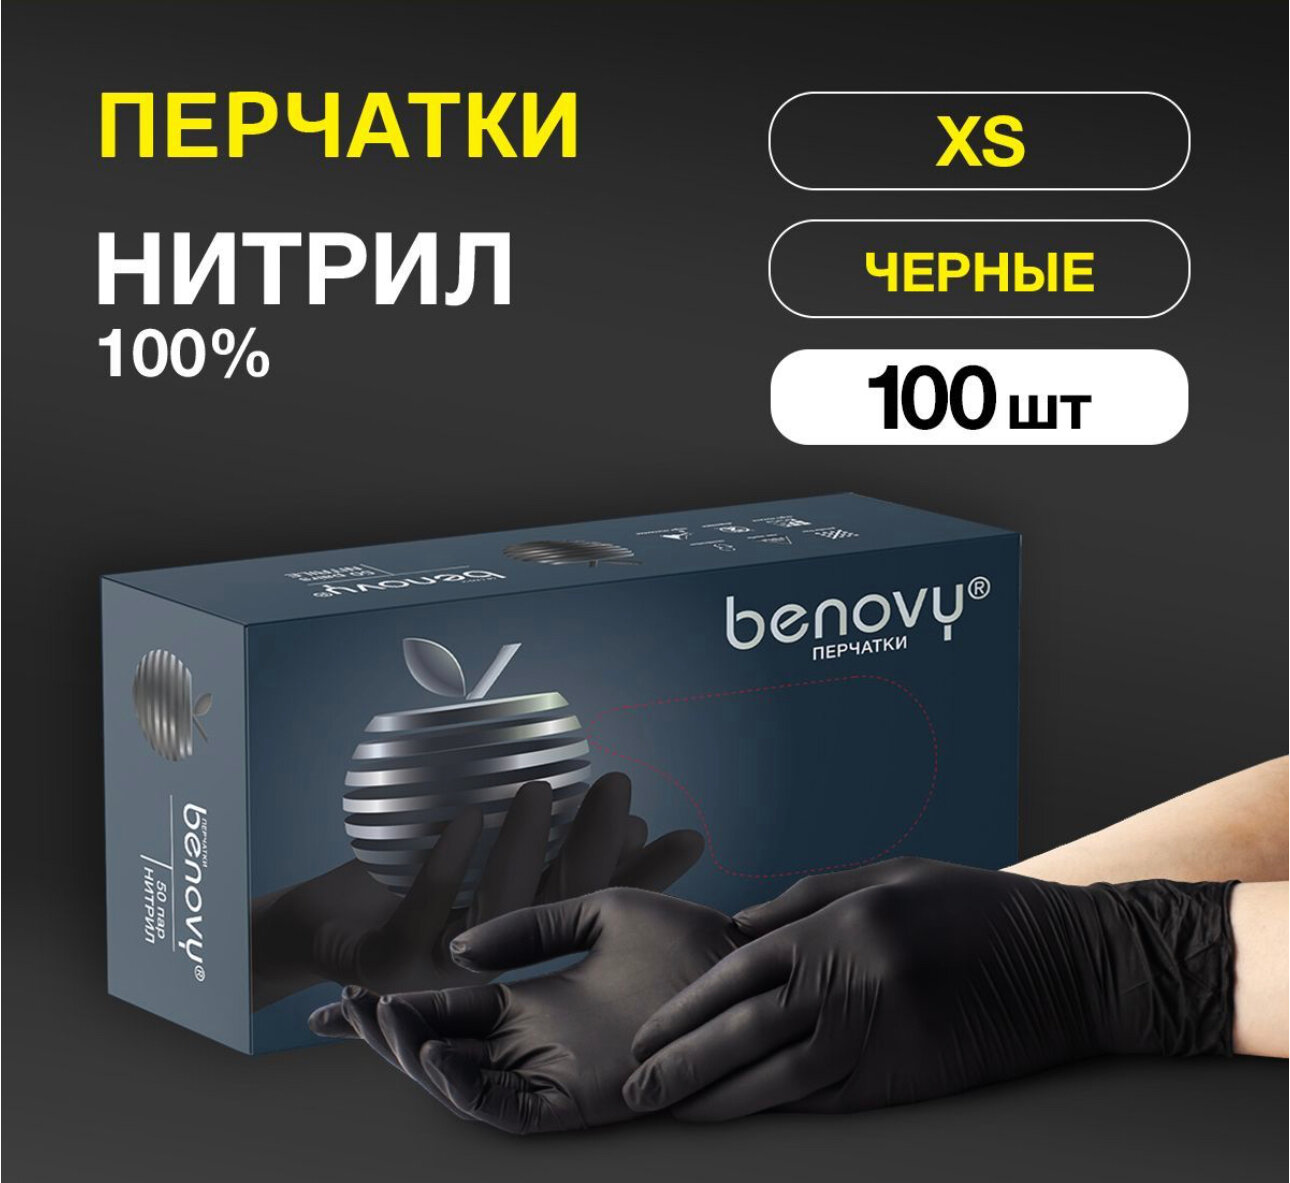 Перчатки нитриловые гипоаллергенные BENOVY 300 шт, для шугаринга, медицинские, сенсорные, одноразовые, смотровые, диагностические. Черные.